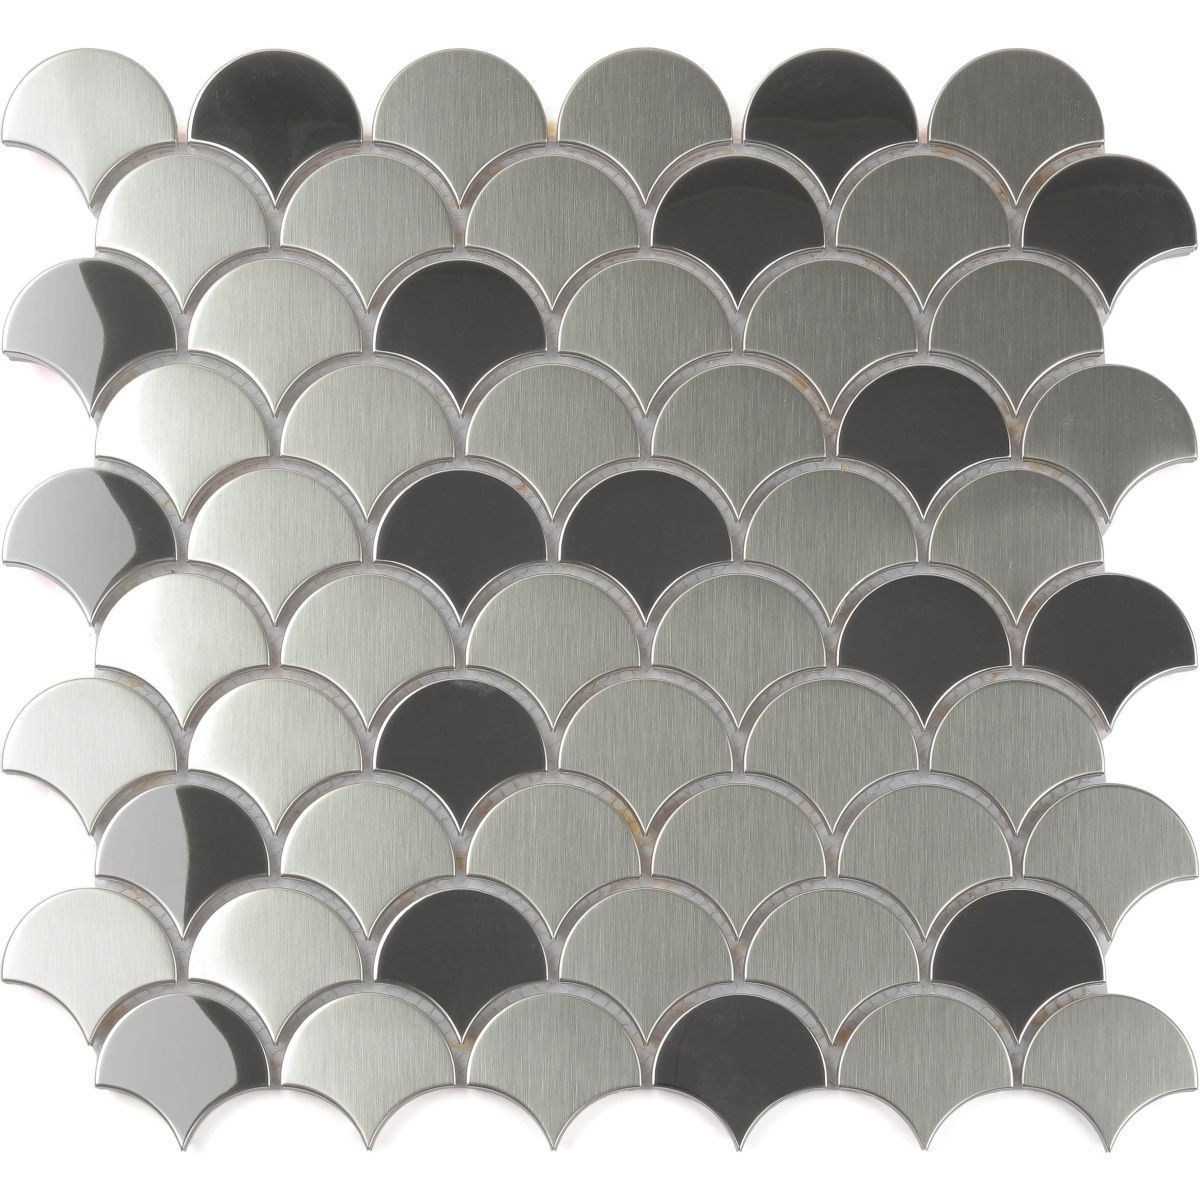 Stainless Steel Fan Mosaic Wall Tile